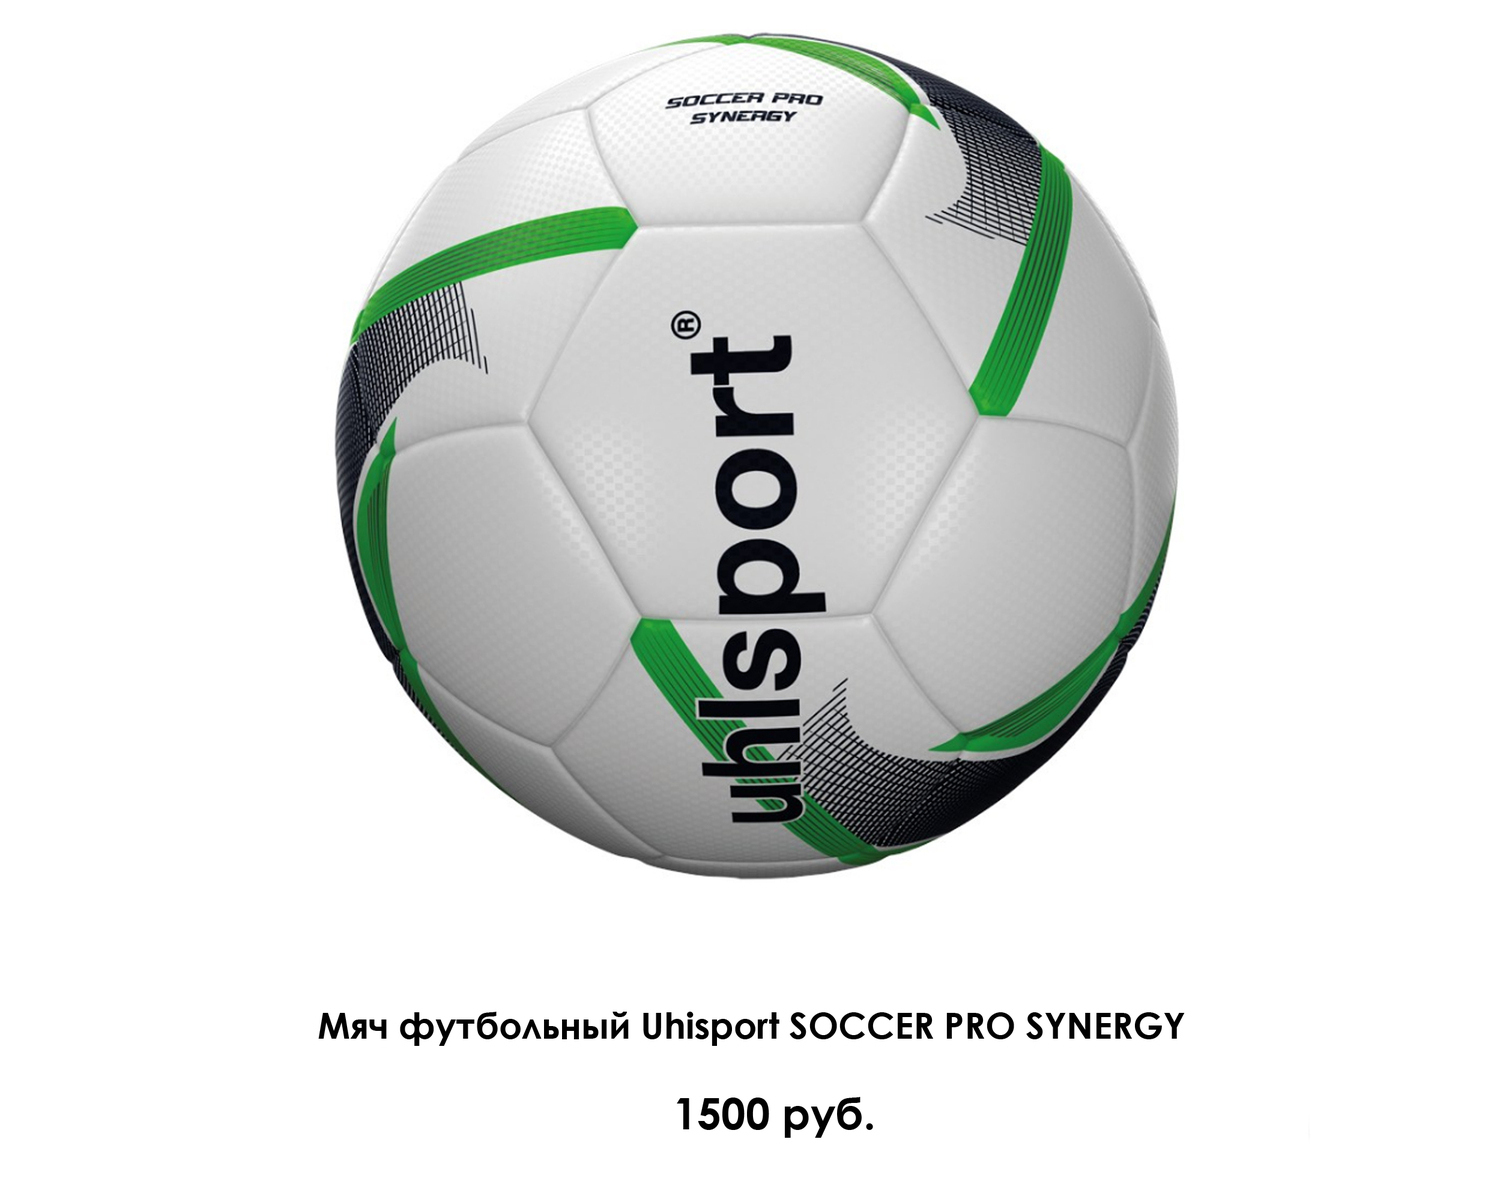 футбольный мяч uhlsport, размер 3, вес 290 грамм, мяч облегченный, отличное качество, рекомендован детям до 10 лет